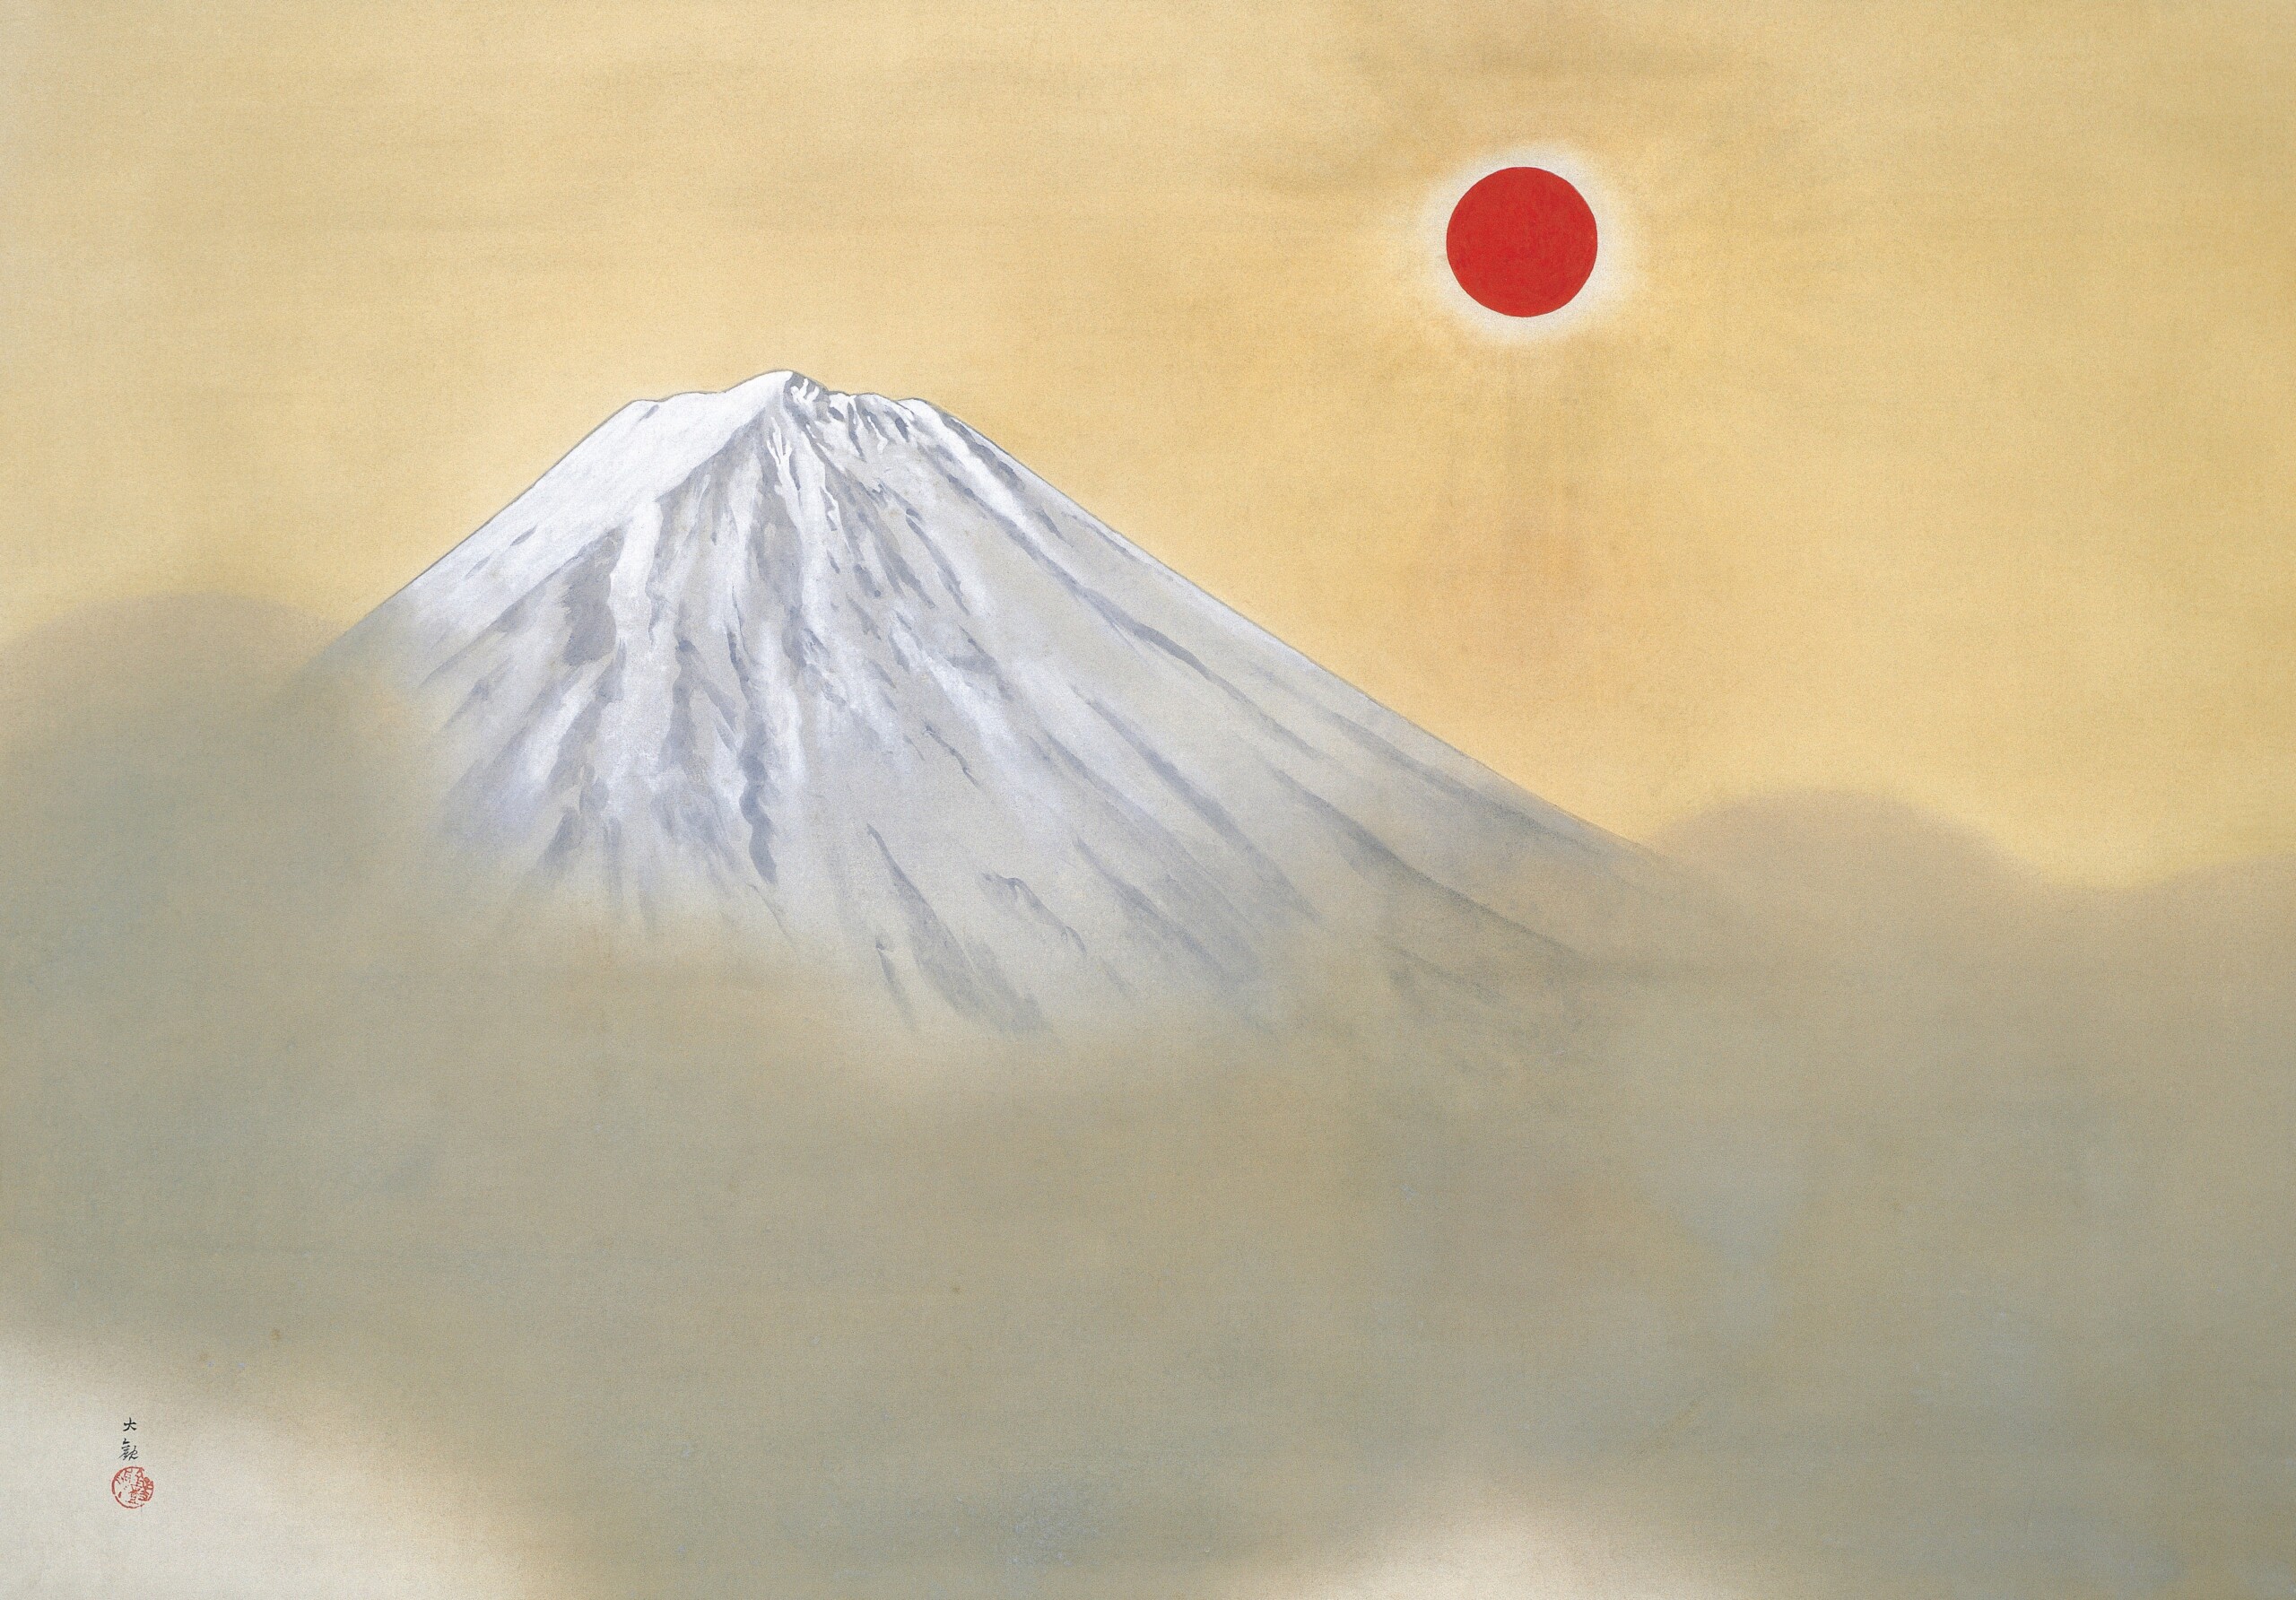 日本の夜明け” 横山 大観作『乾坤輝く』を鑑賞する - 私の美術館 -Mai 